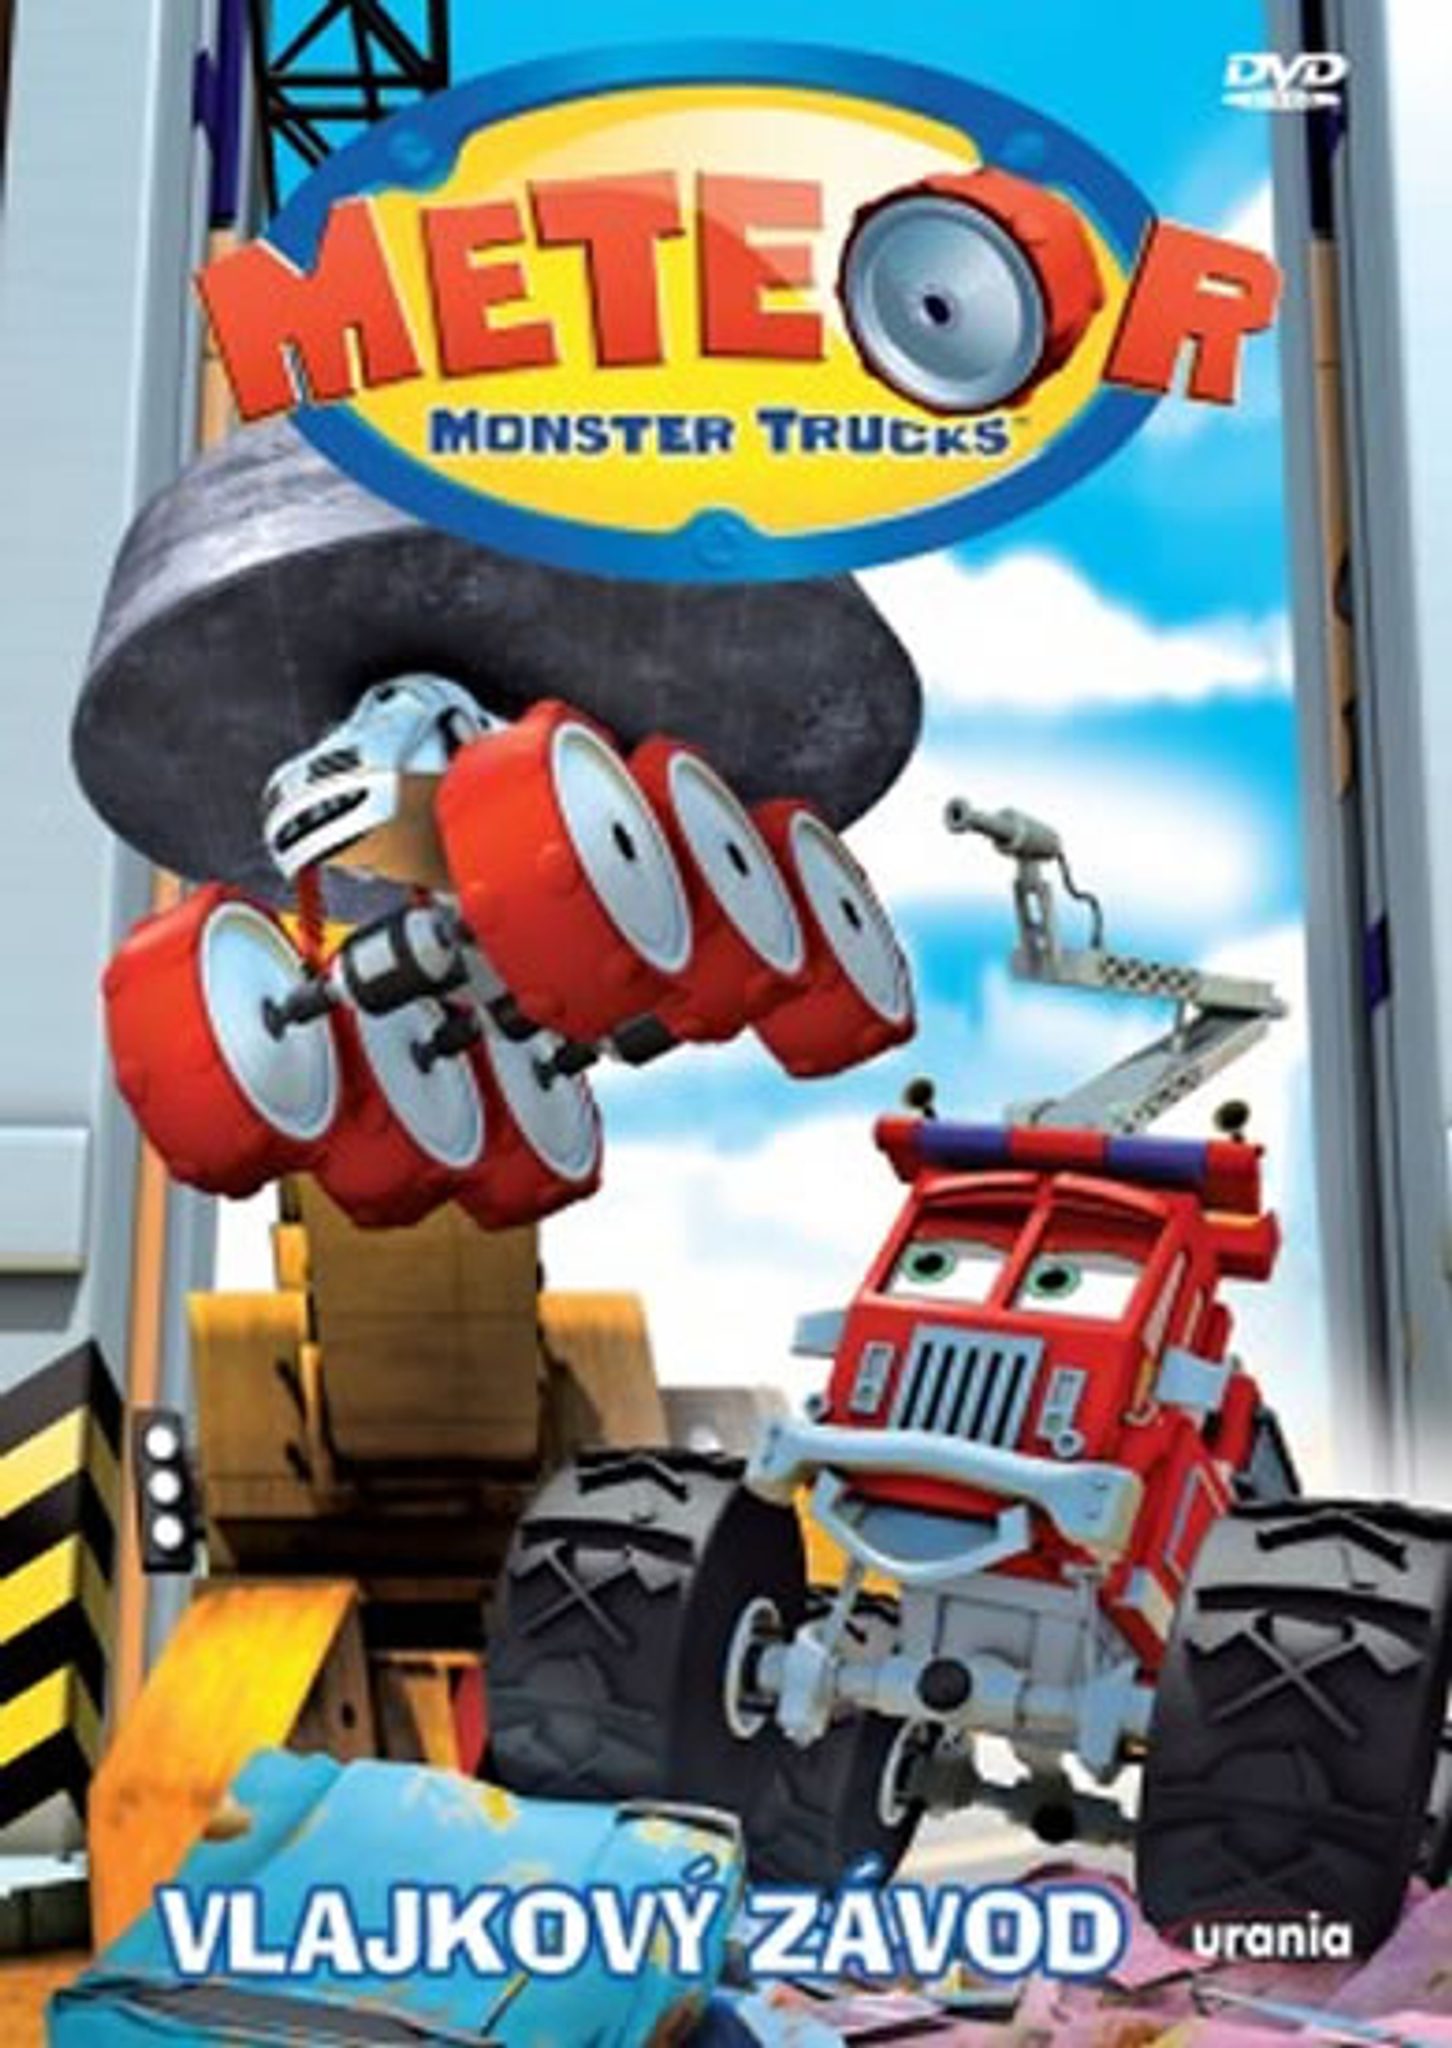 DVD Meteor Monster Trucks 2 - Vlajkov zvod - Kliknutm na obrzek zavete